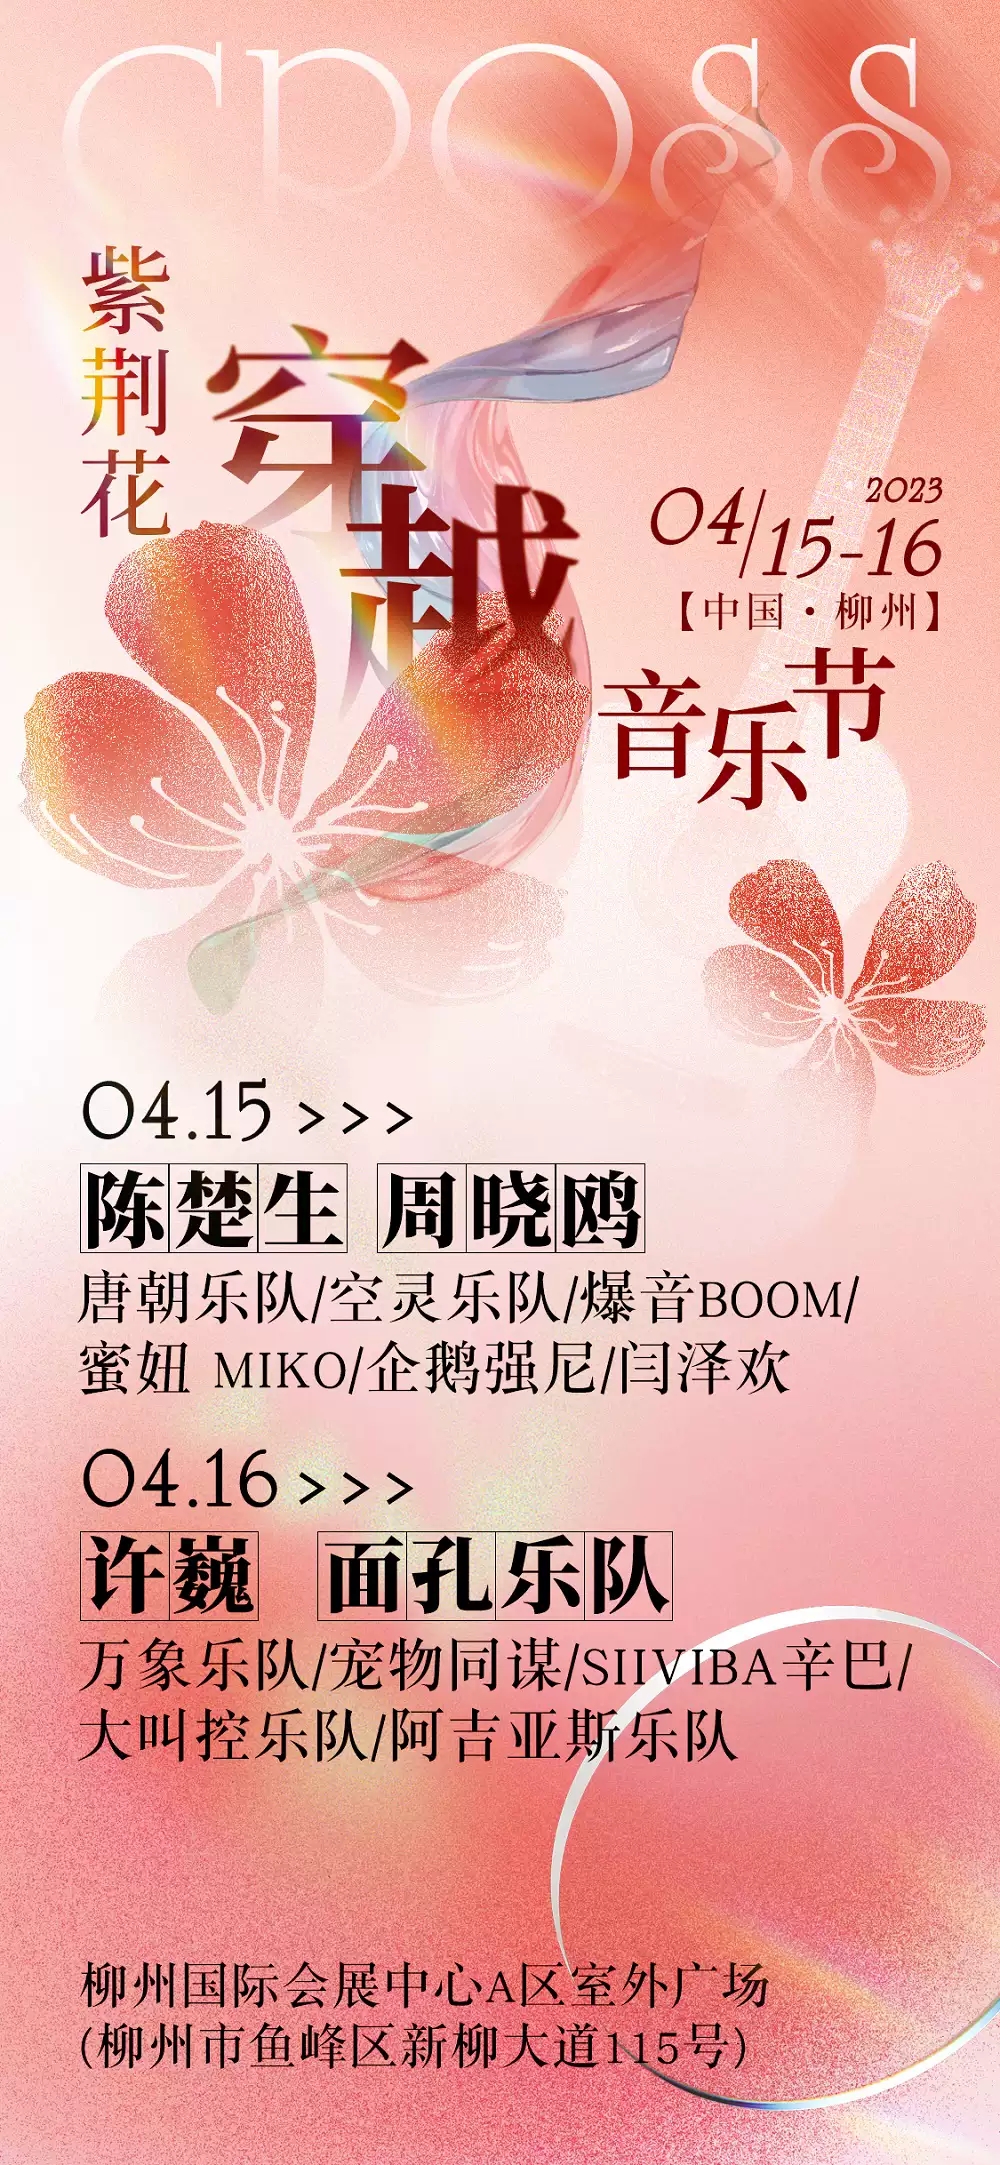 2023柳州紫荆花穿越音乐节(时间+地点+门票价格)信息一览